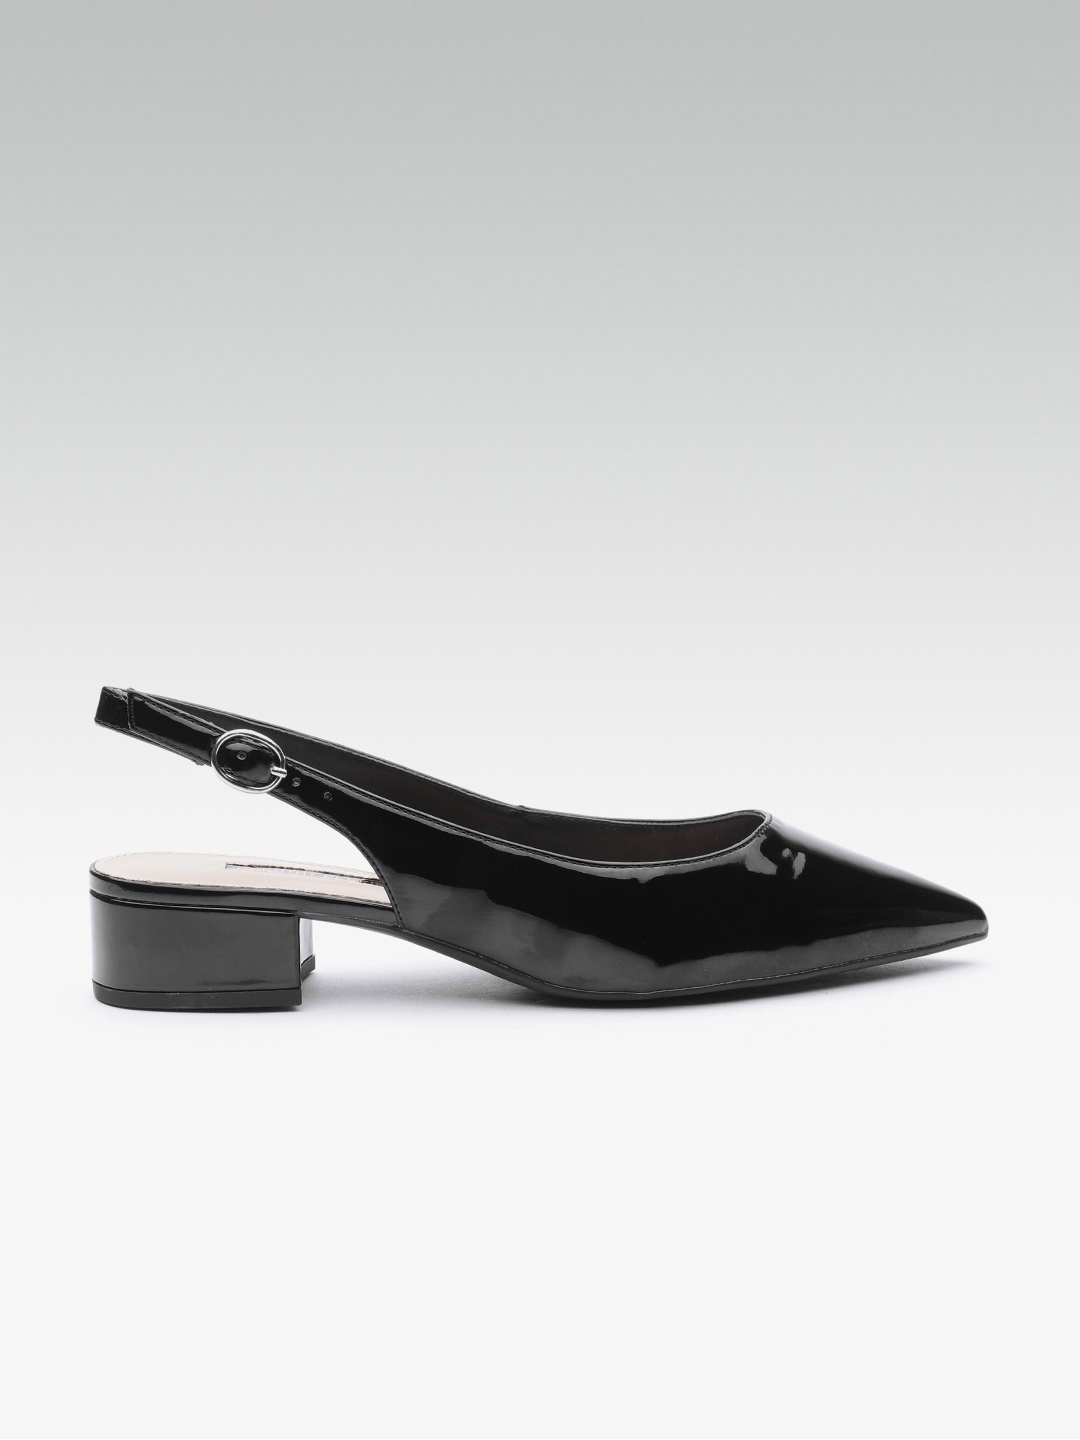 Buy DOROTHY PERKINS Women Black Solid Pumps - Heels for Women 8425561 ...